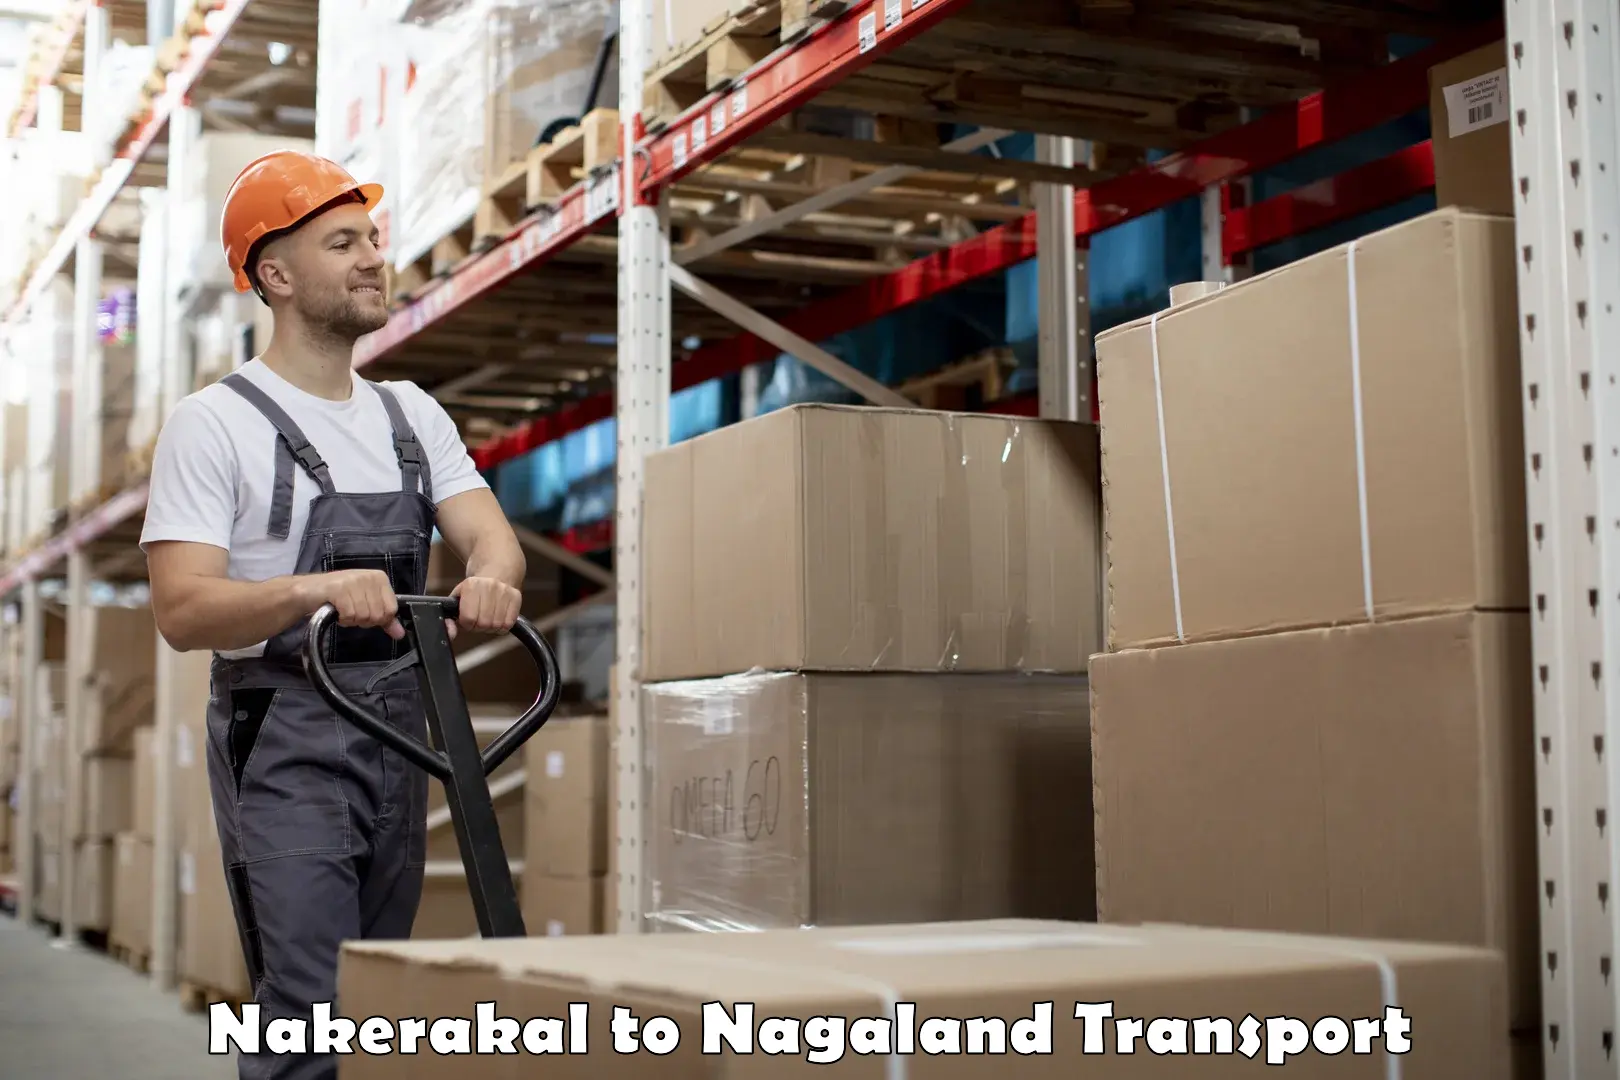 Road transport online services Nakerakal to Nagaland